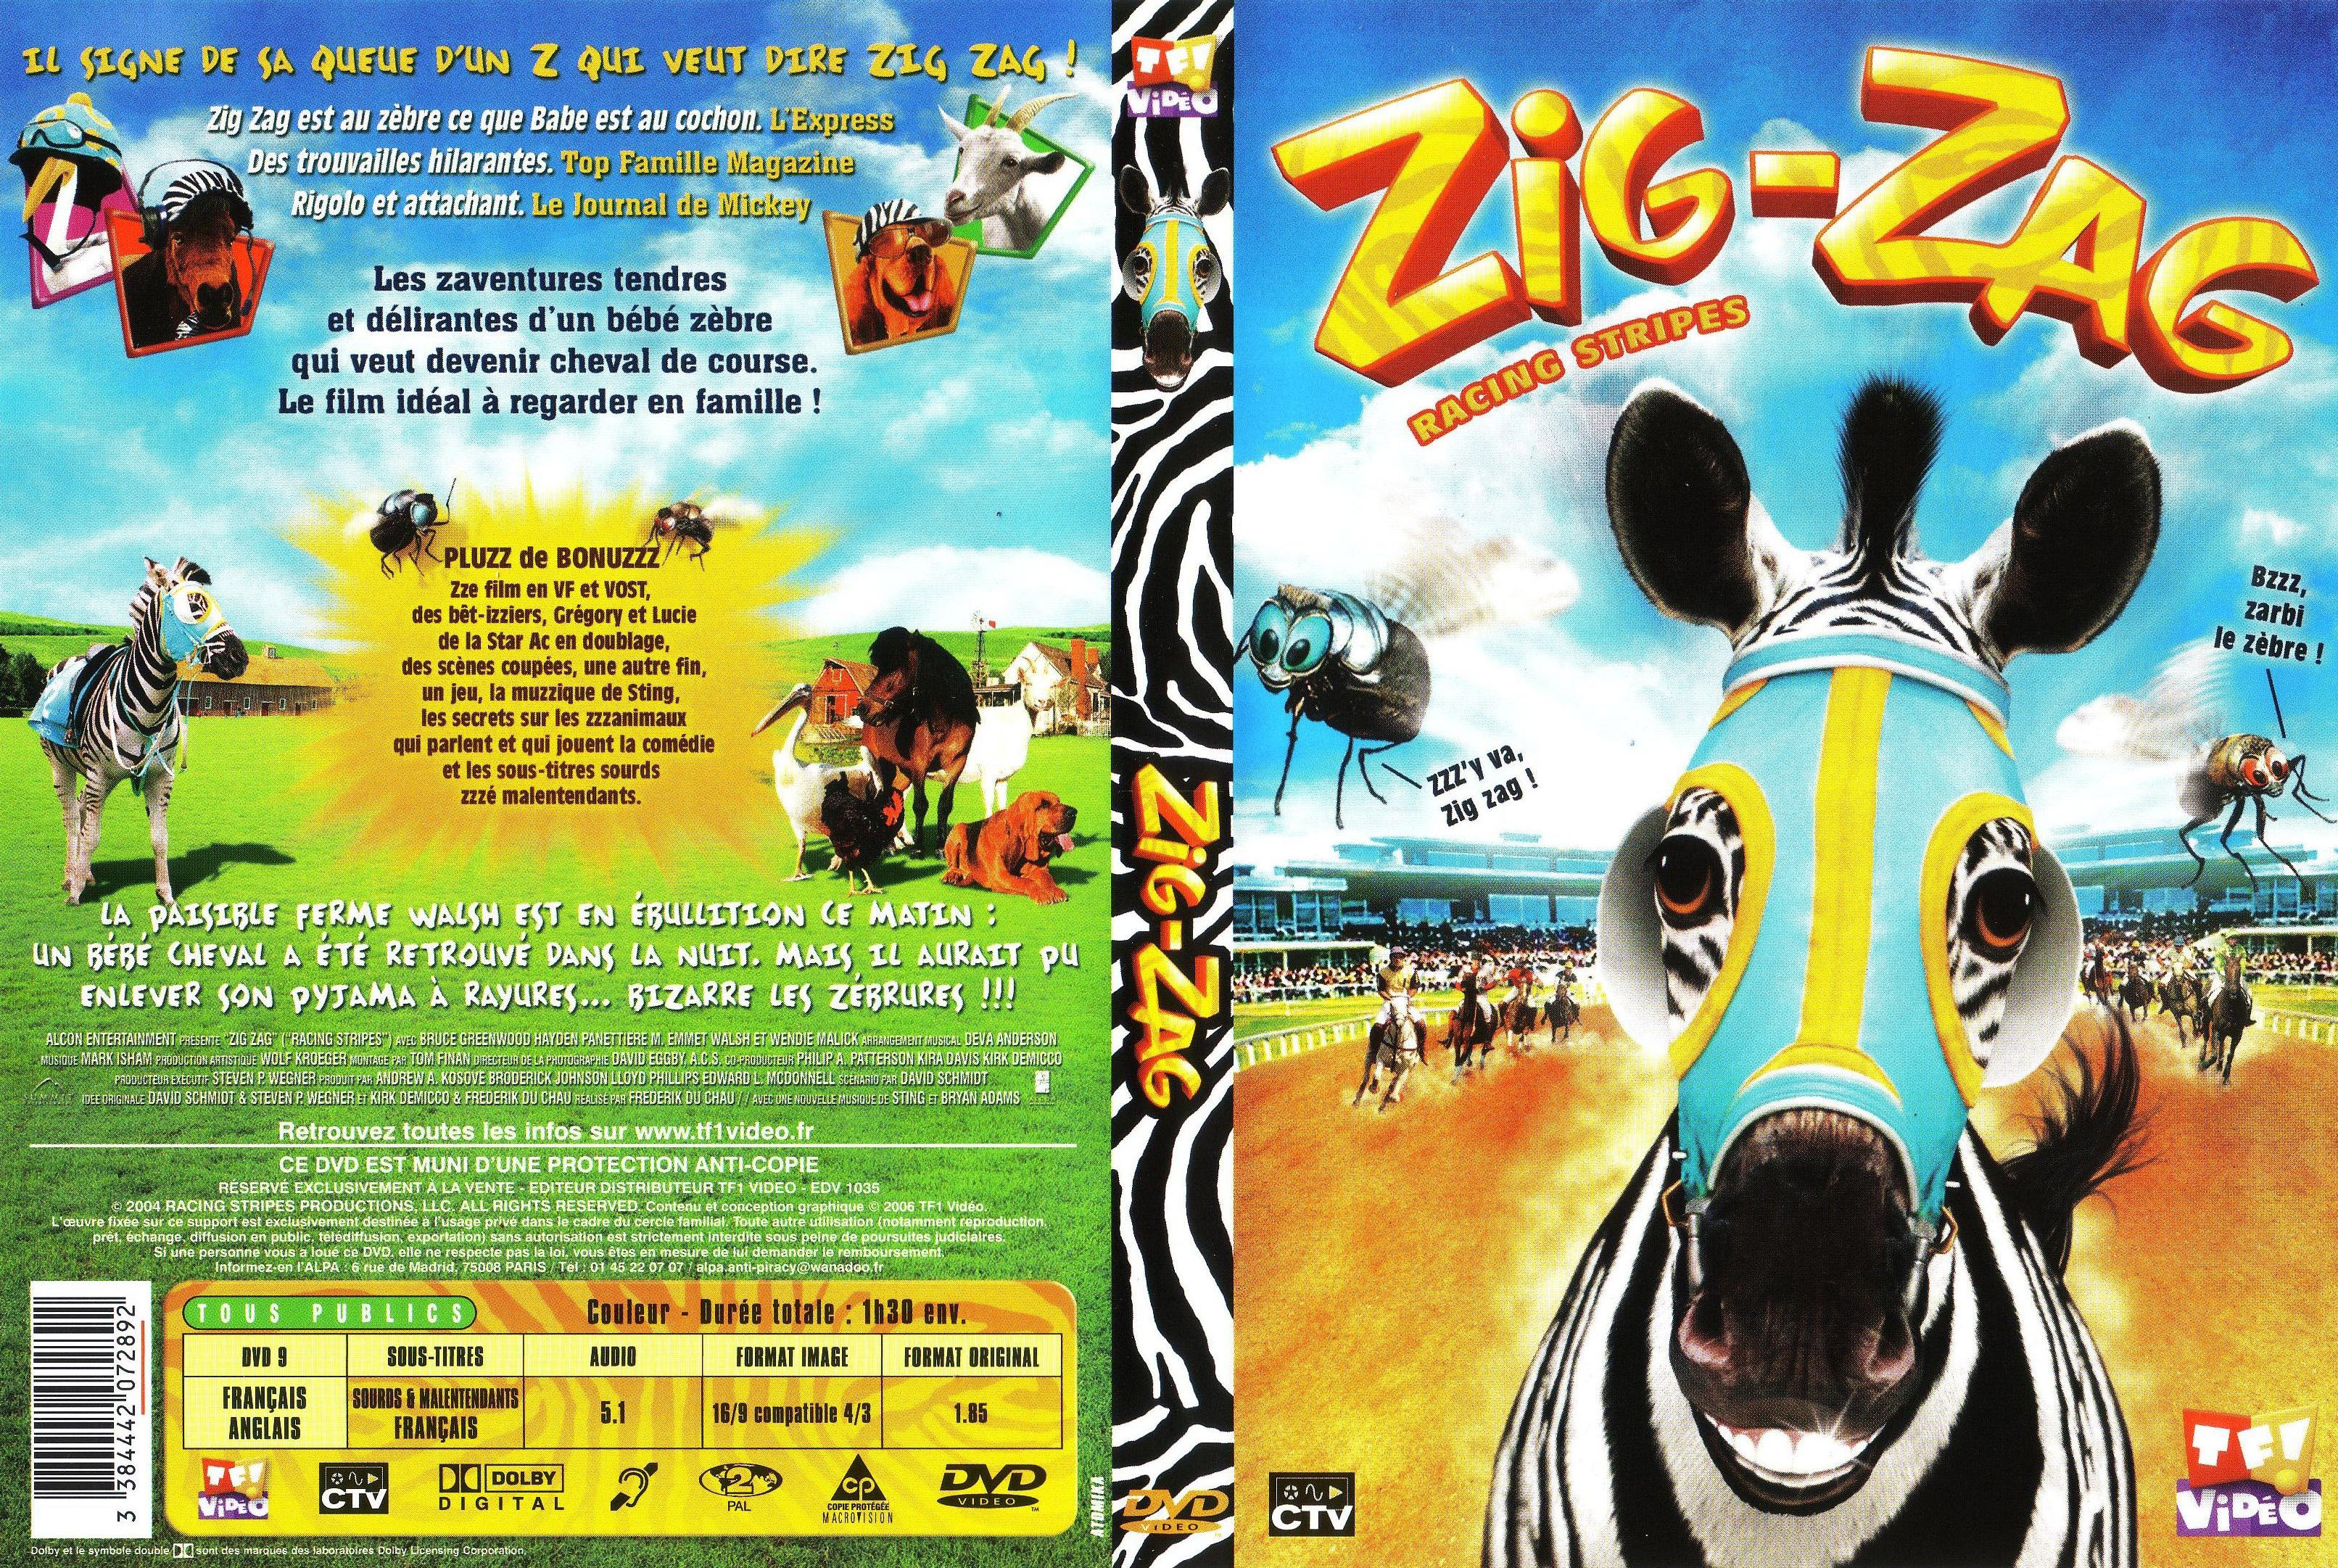 Jaquette DVD Zig-Zag v2